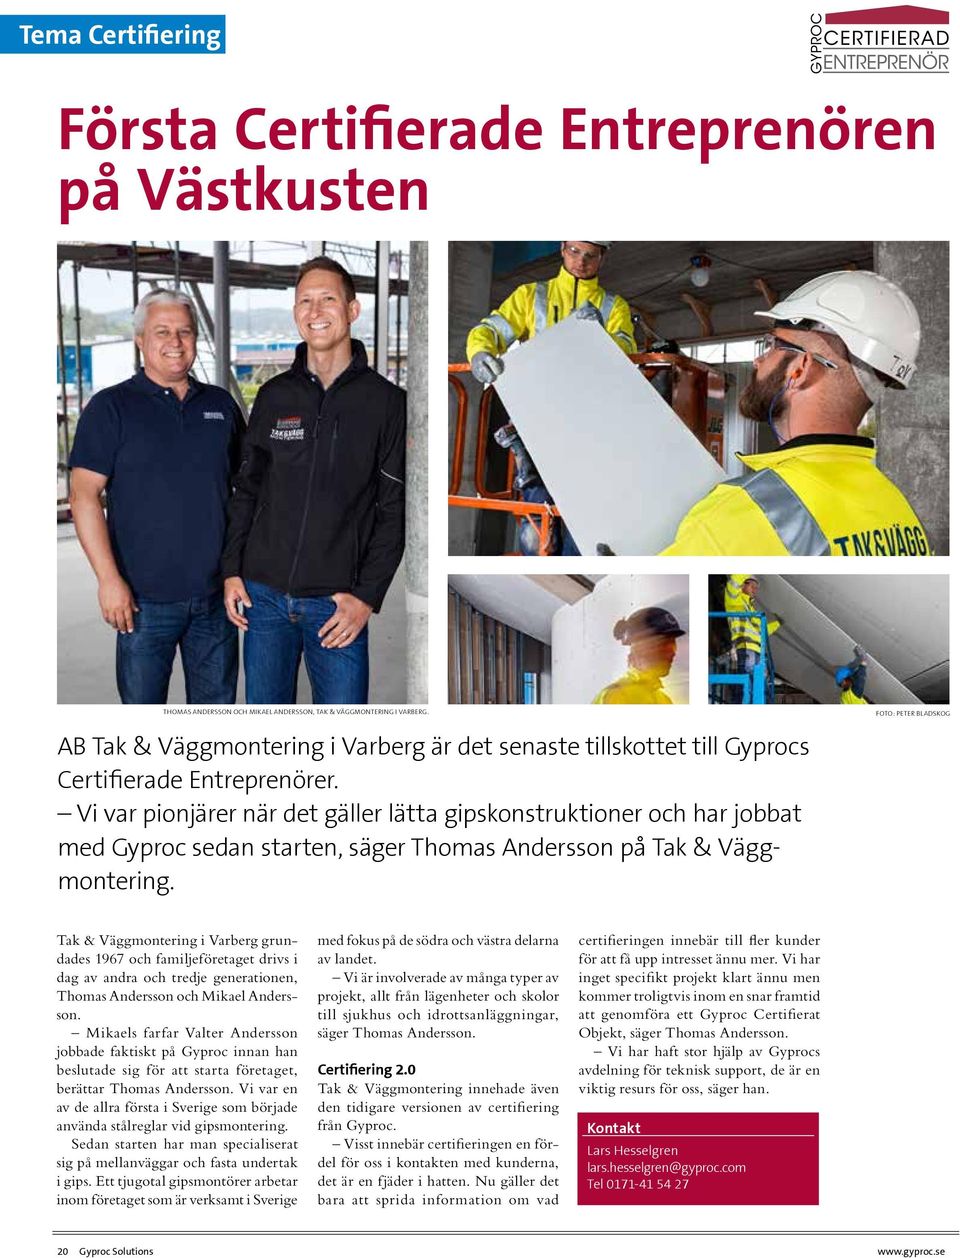 Vi var pionjärer när det gäller lätta gipskonstruktioner och har jobbat med Gyproc sedan starten, säger Thomas Andersson på Tak & Väggmontering.